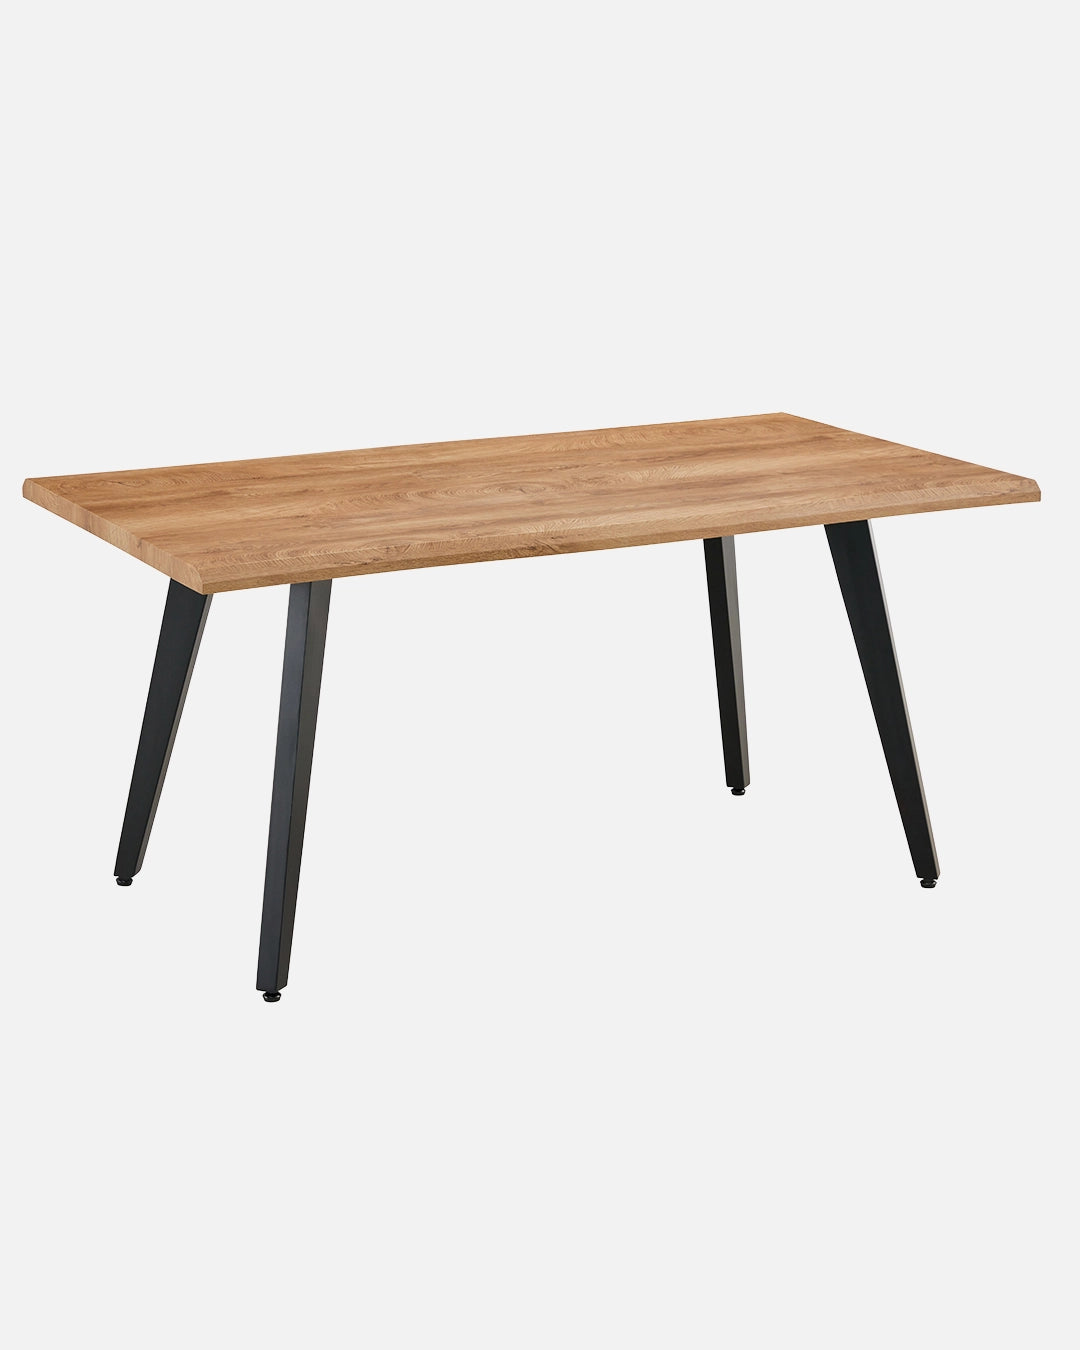 Table en bois avec pattes en métal noires